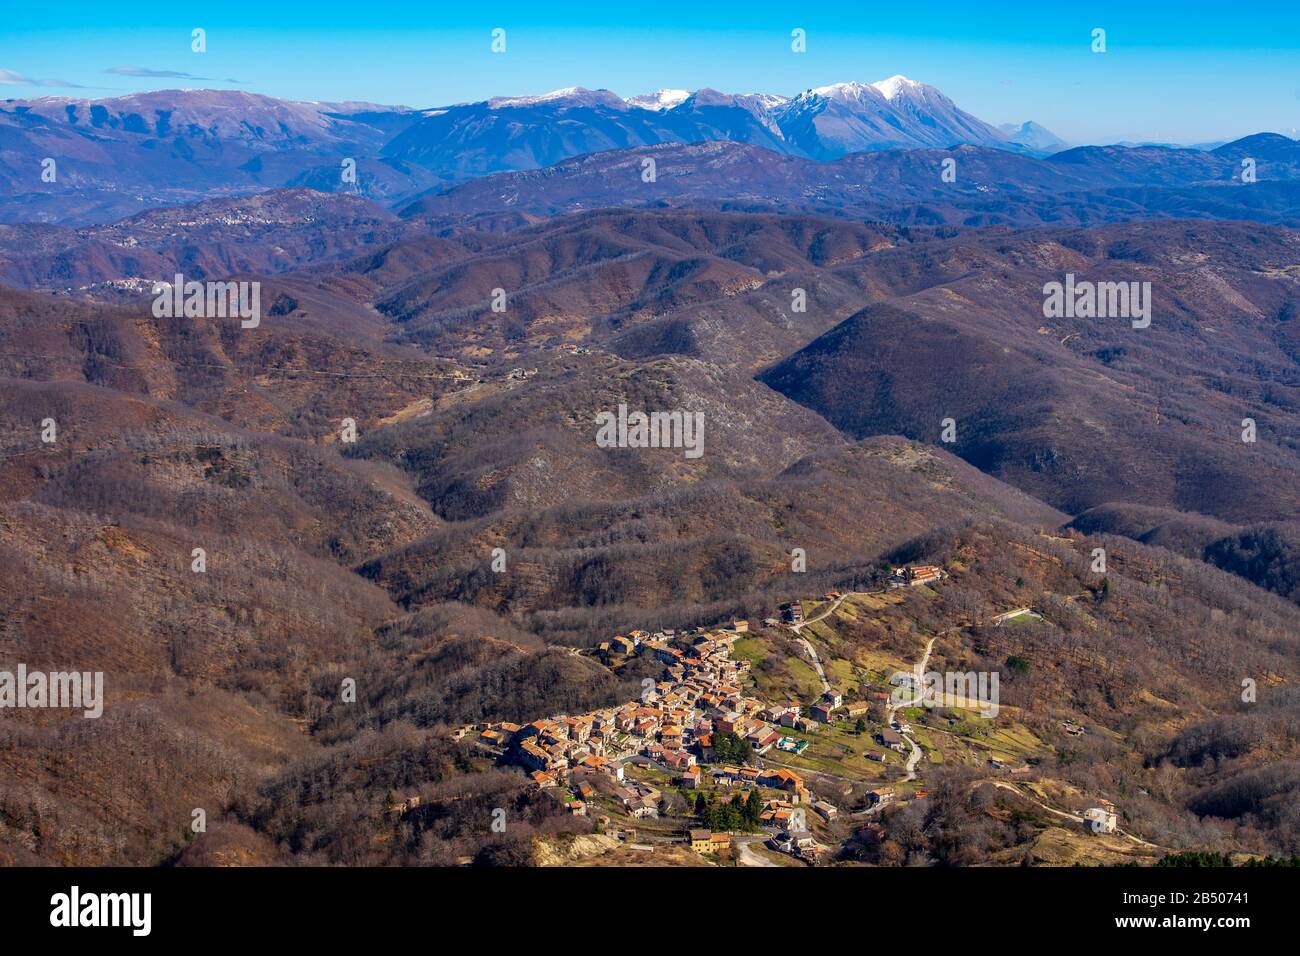 Panorama der Zentralapenninen mit Blick auf die Gruppe Monte Velino im Hintergrund Stockfoto